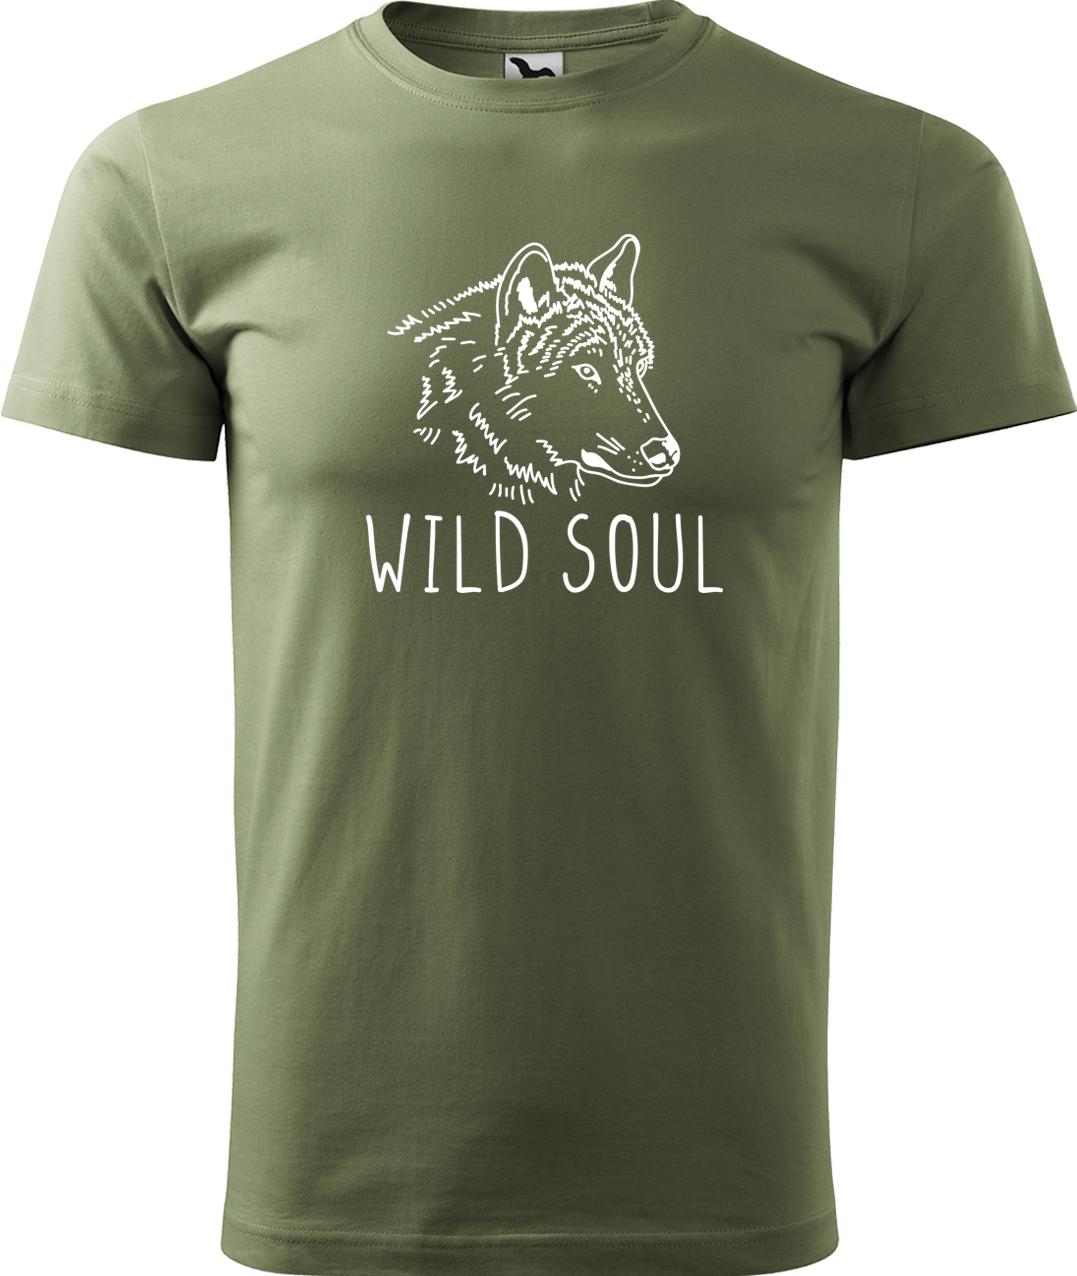 Pánské tričko s vlkem - Wild soul Velikost: 4XL, Barva: Světlá khaki (28), Střih: pánský